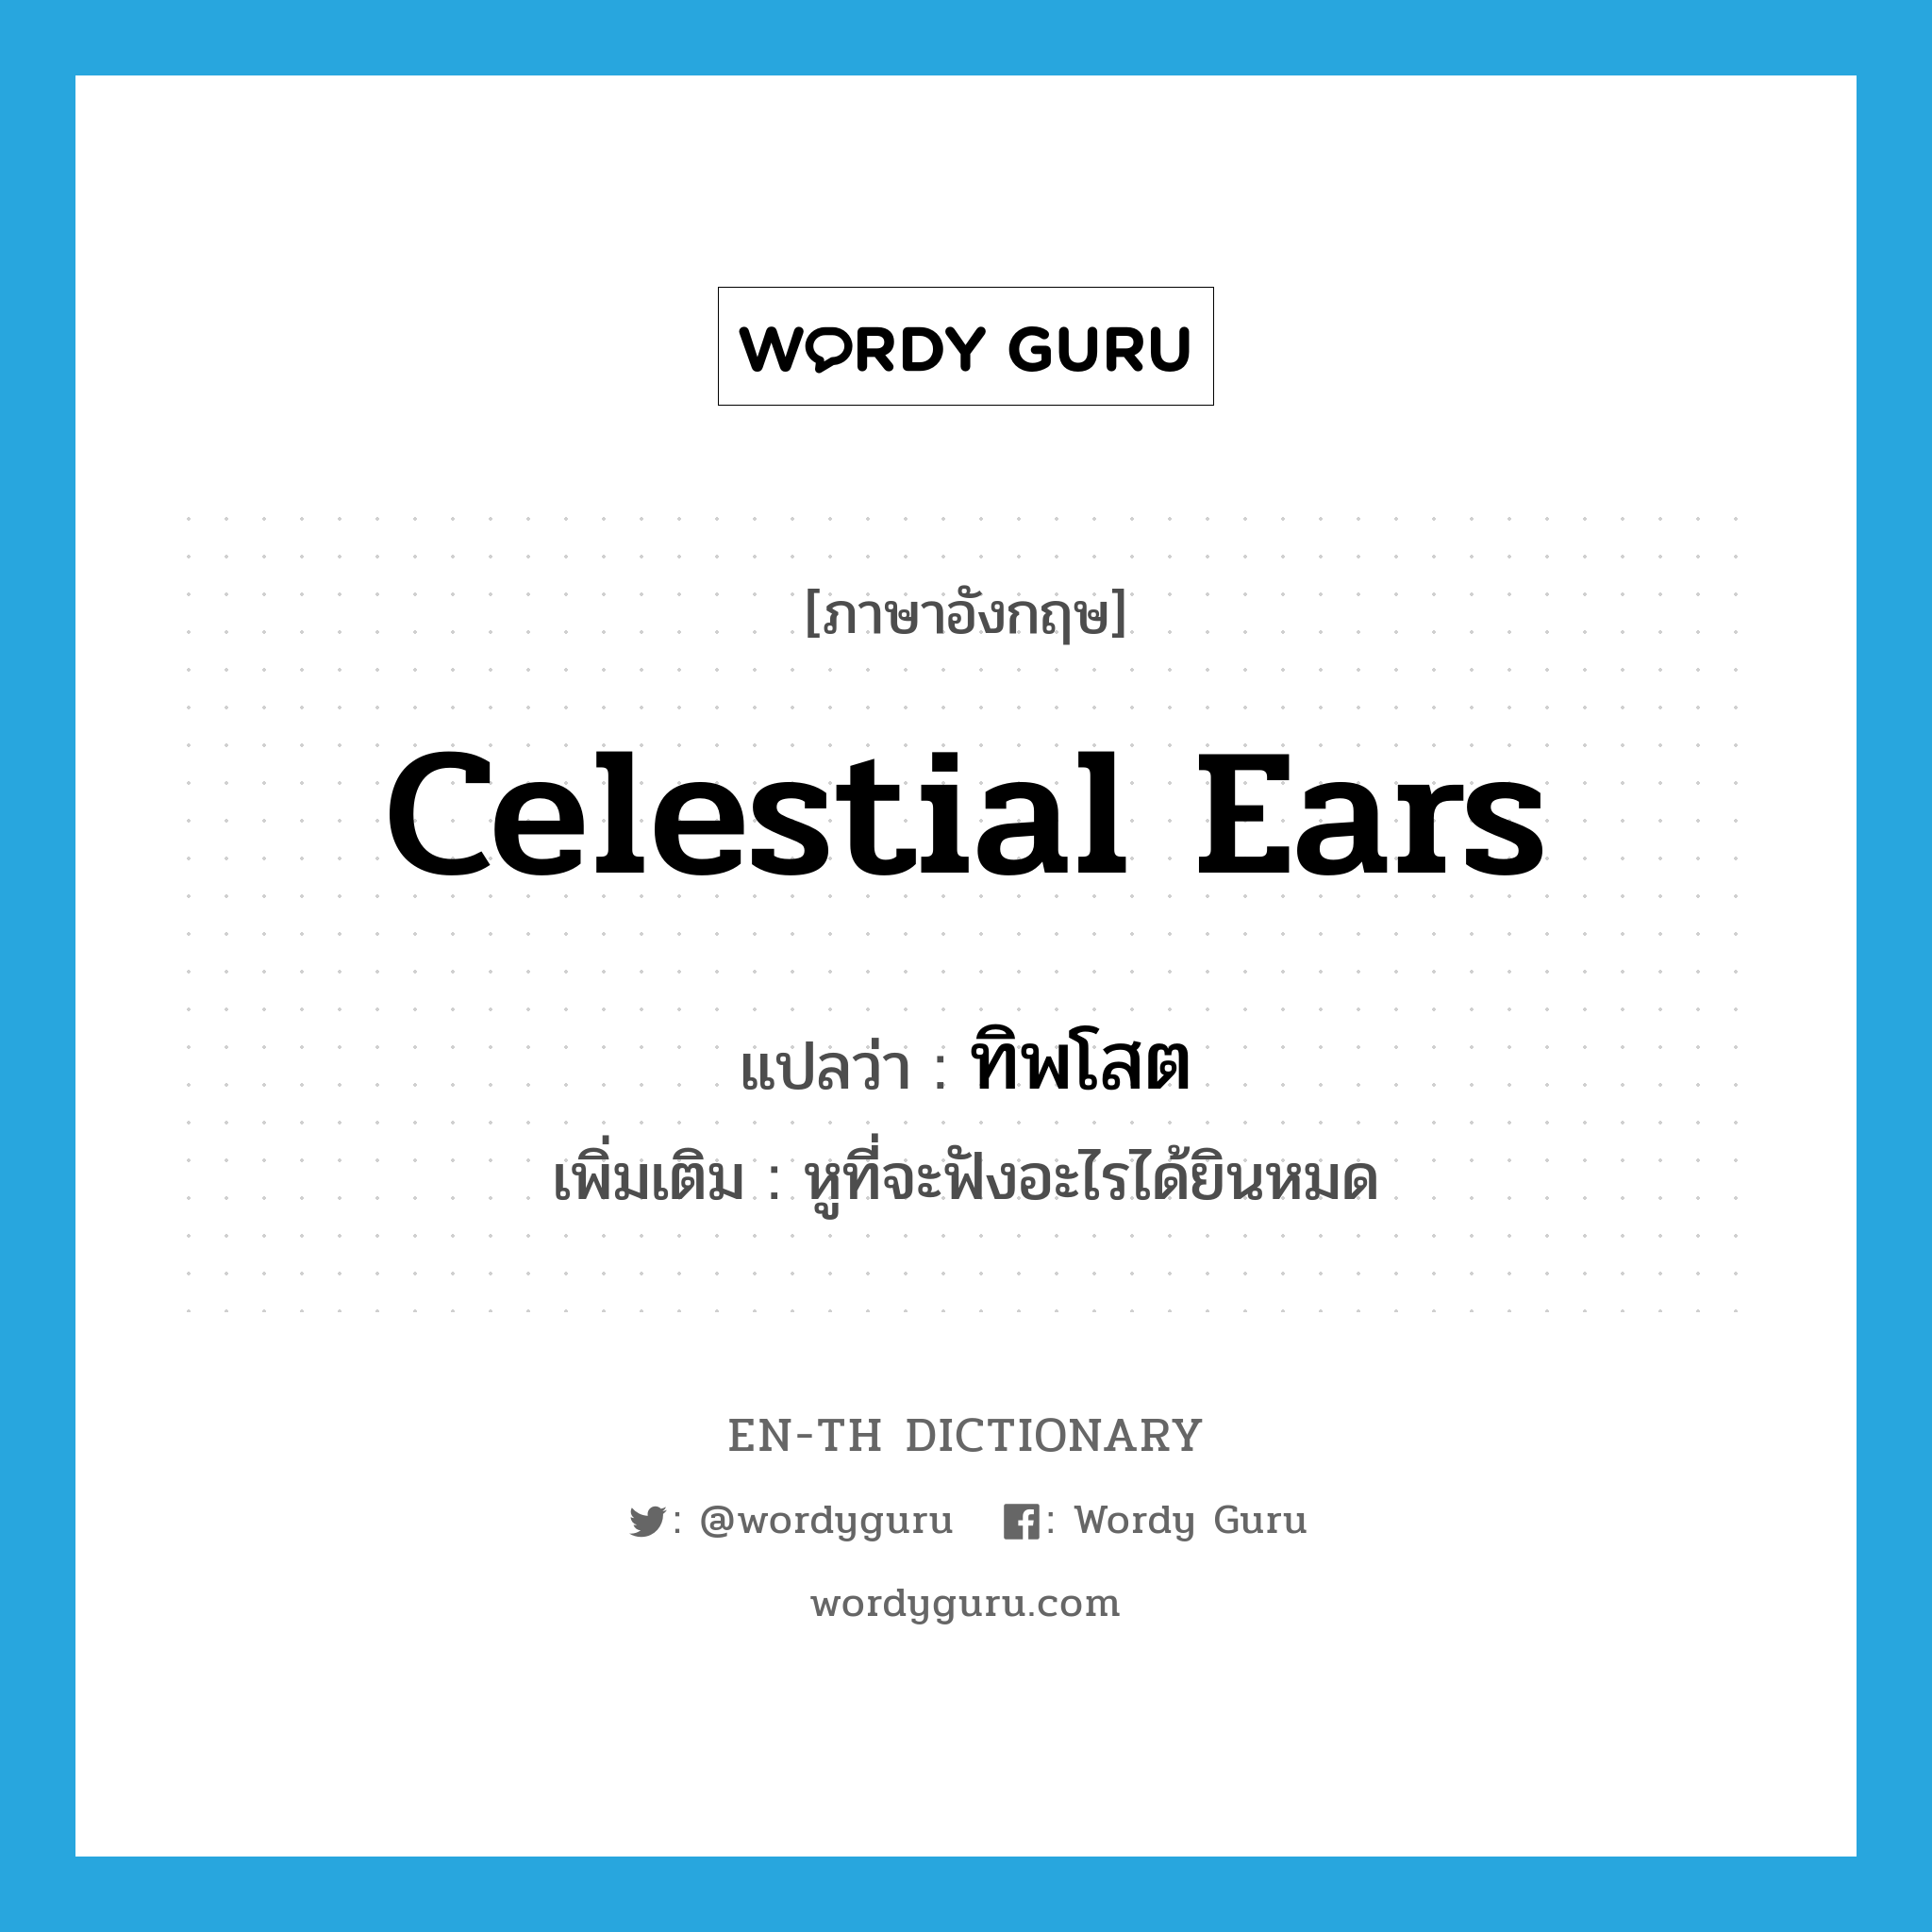 celestial ears แปลว่า?, คำศัพท์ภาษาอังกฤษ celestial ears แปลว่า ทิพโสต ประเภท N เพิ่มเติม หูที่จะฟังอะไรได้ยินหมด หมวด N